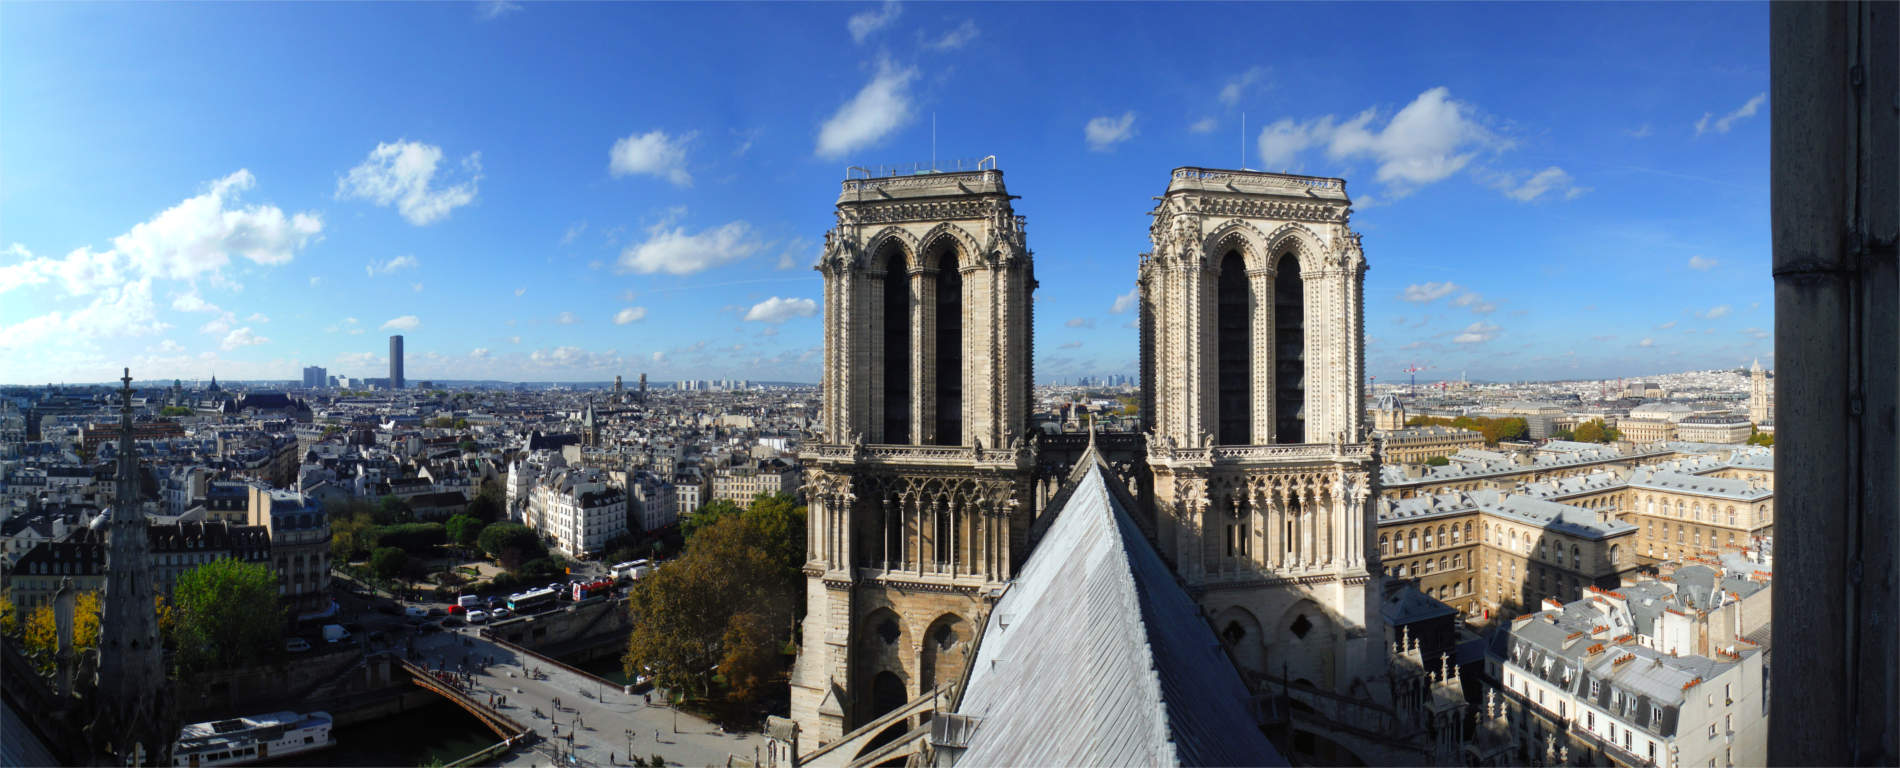 2017 - Cathédrale Notre-Dame de Paris